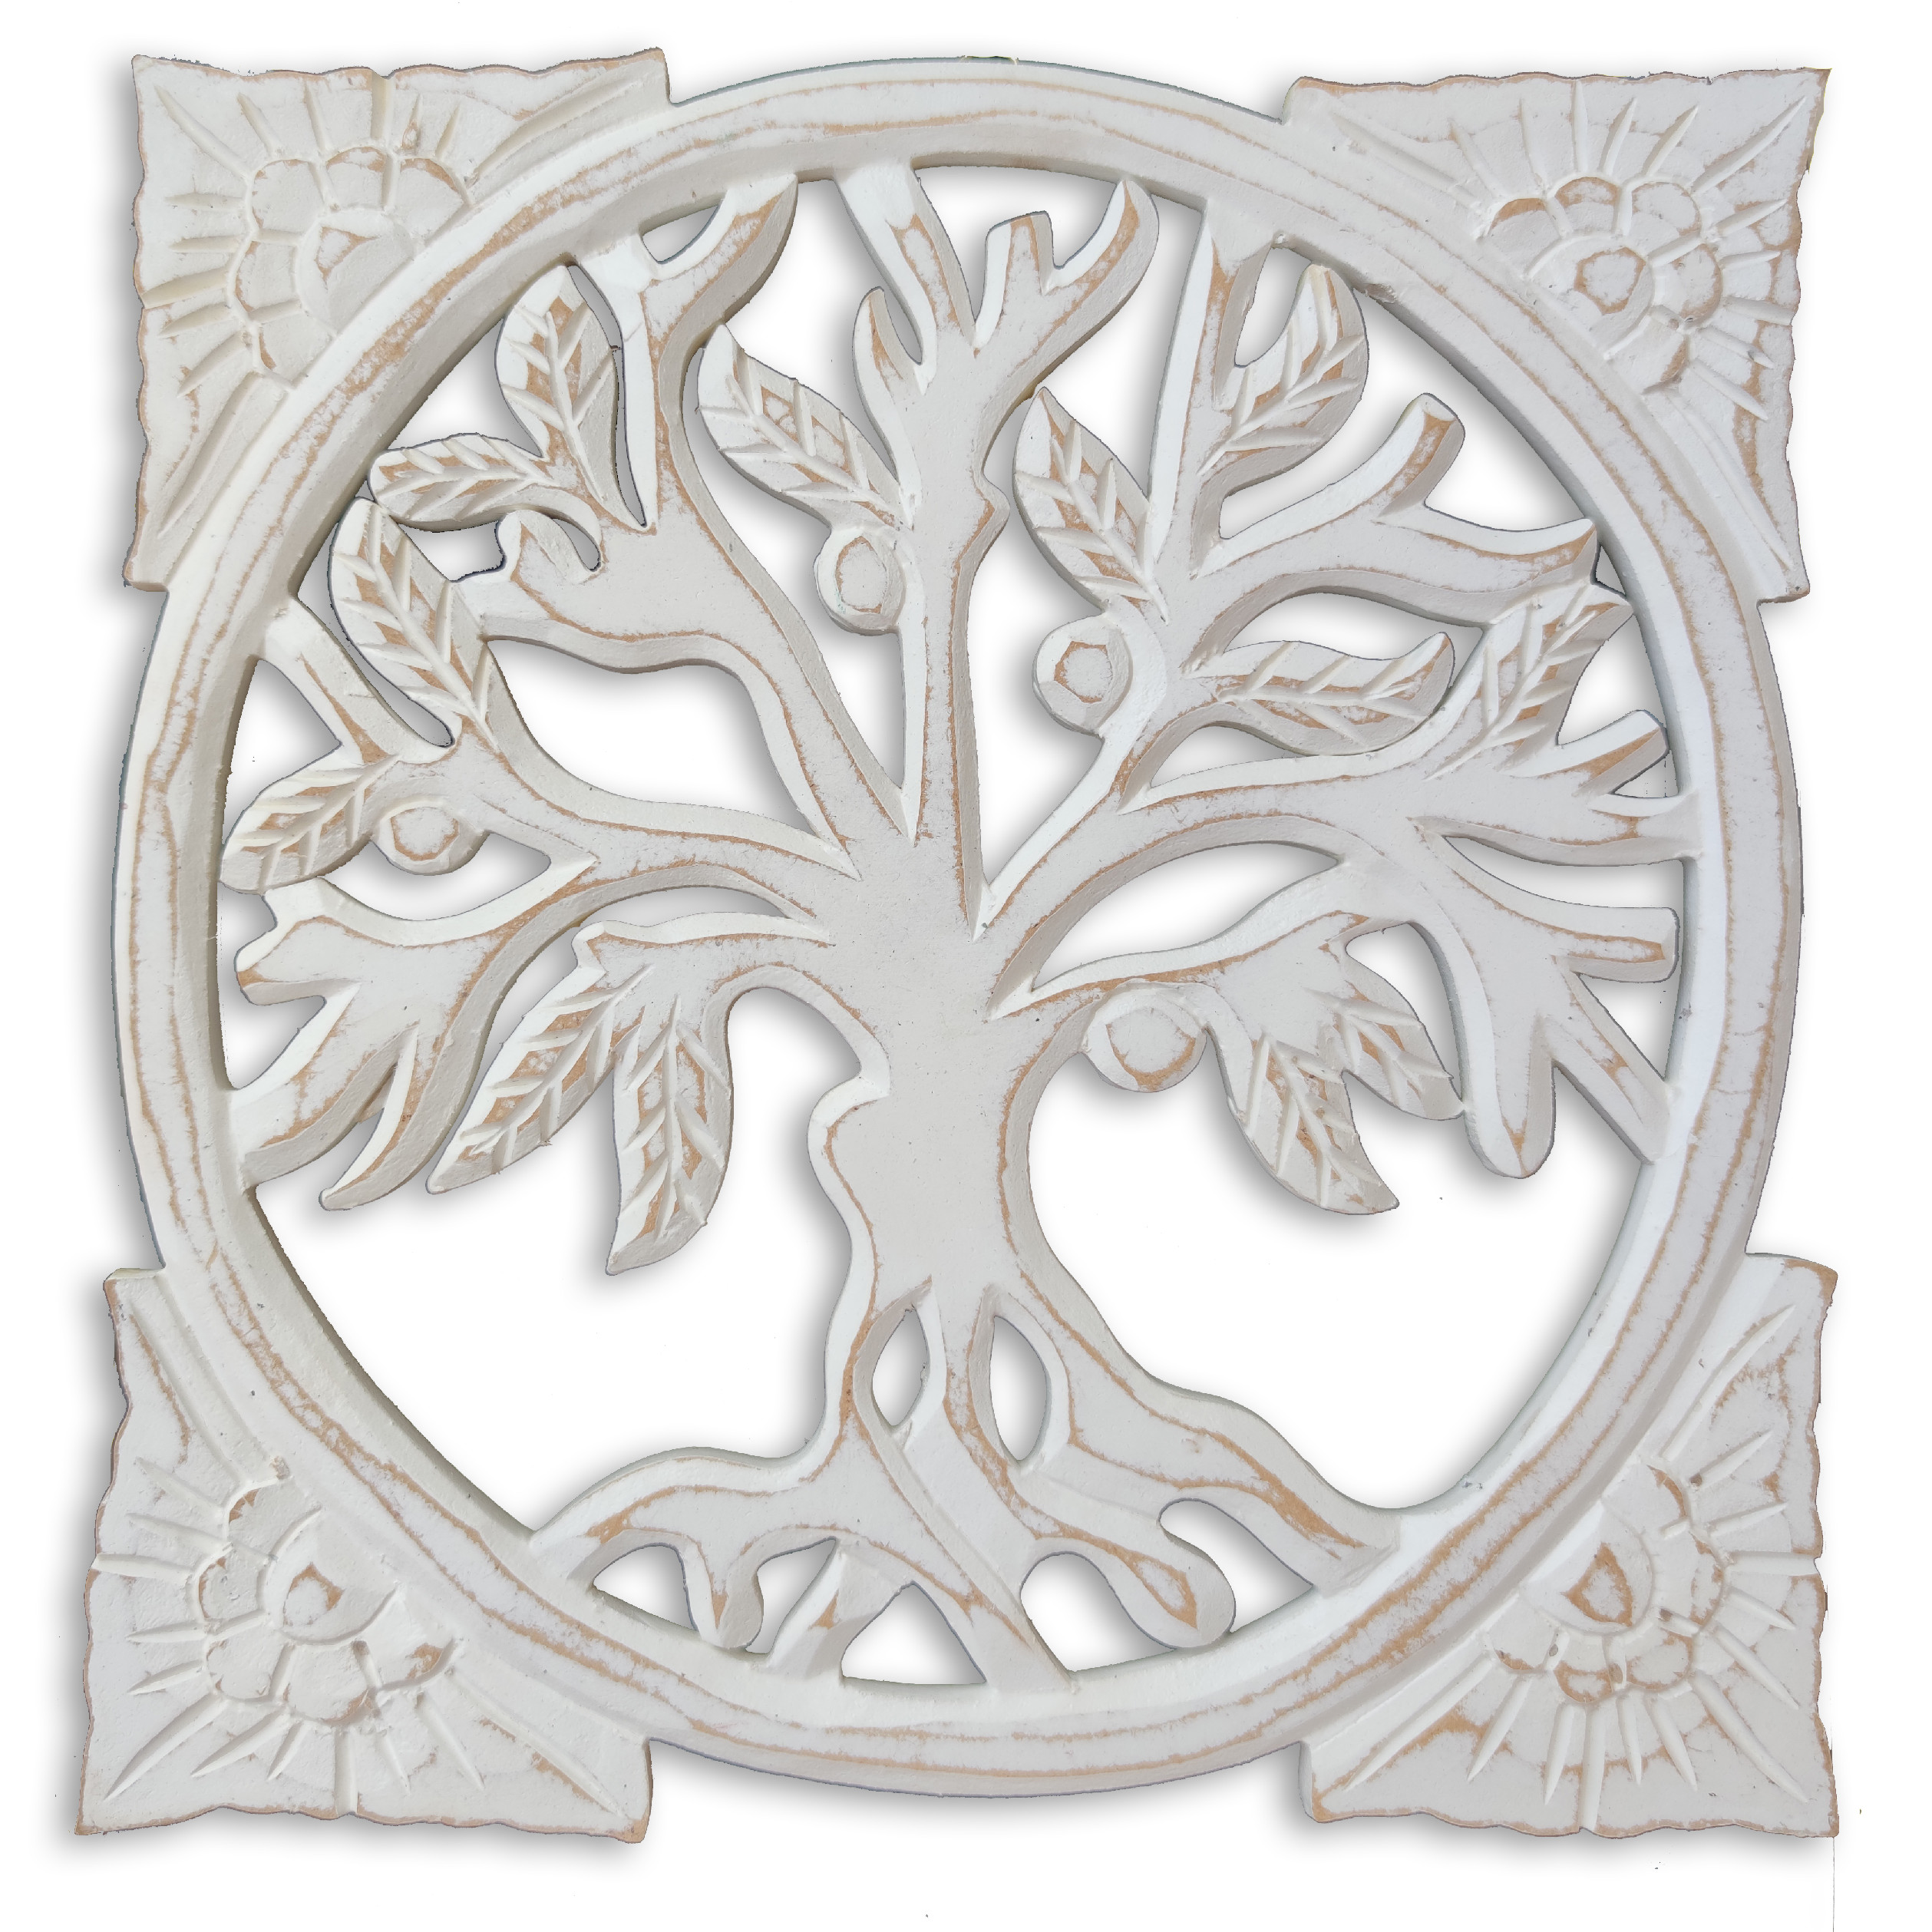 Dekorace na zeď Strom života čtverec - bílá patina